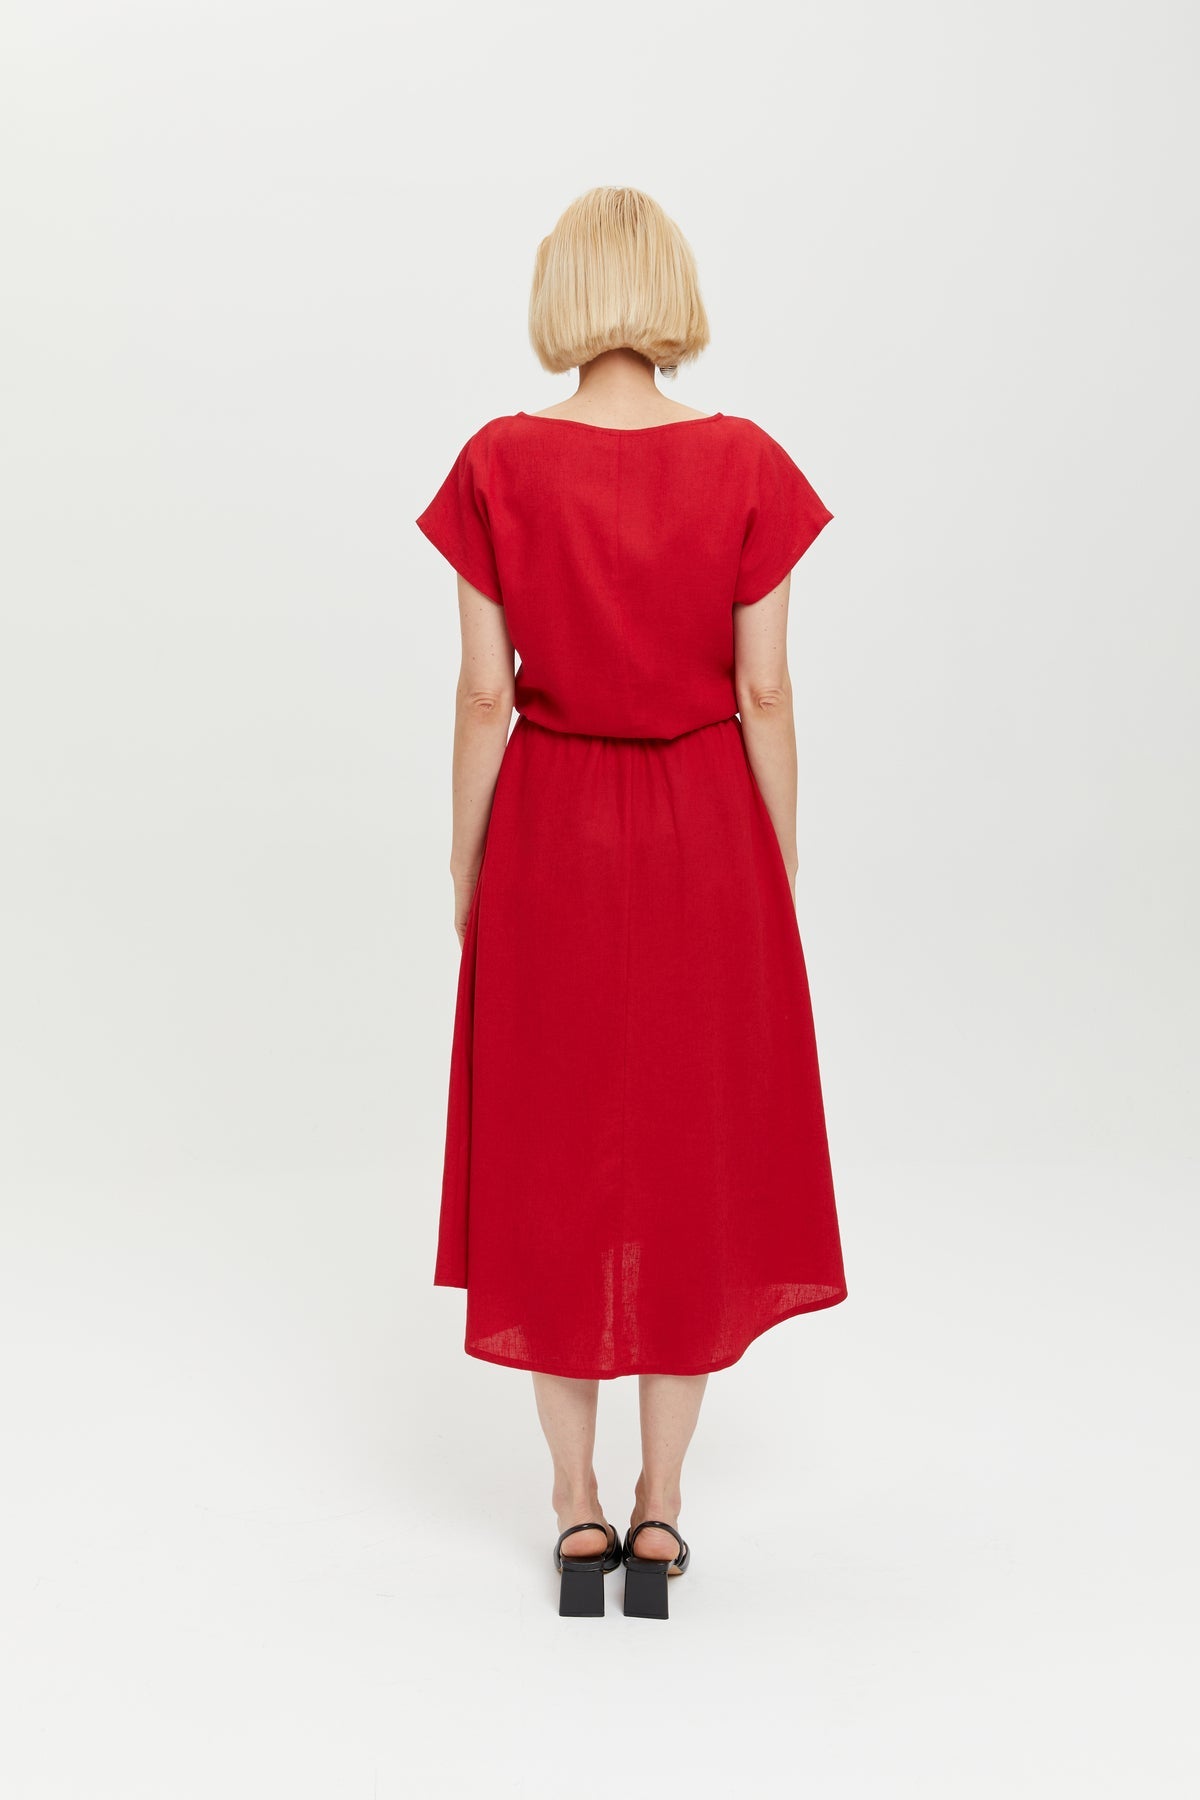 Nane | Leinenkleid mit kurzen Ärmeln in Rot von Ayani